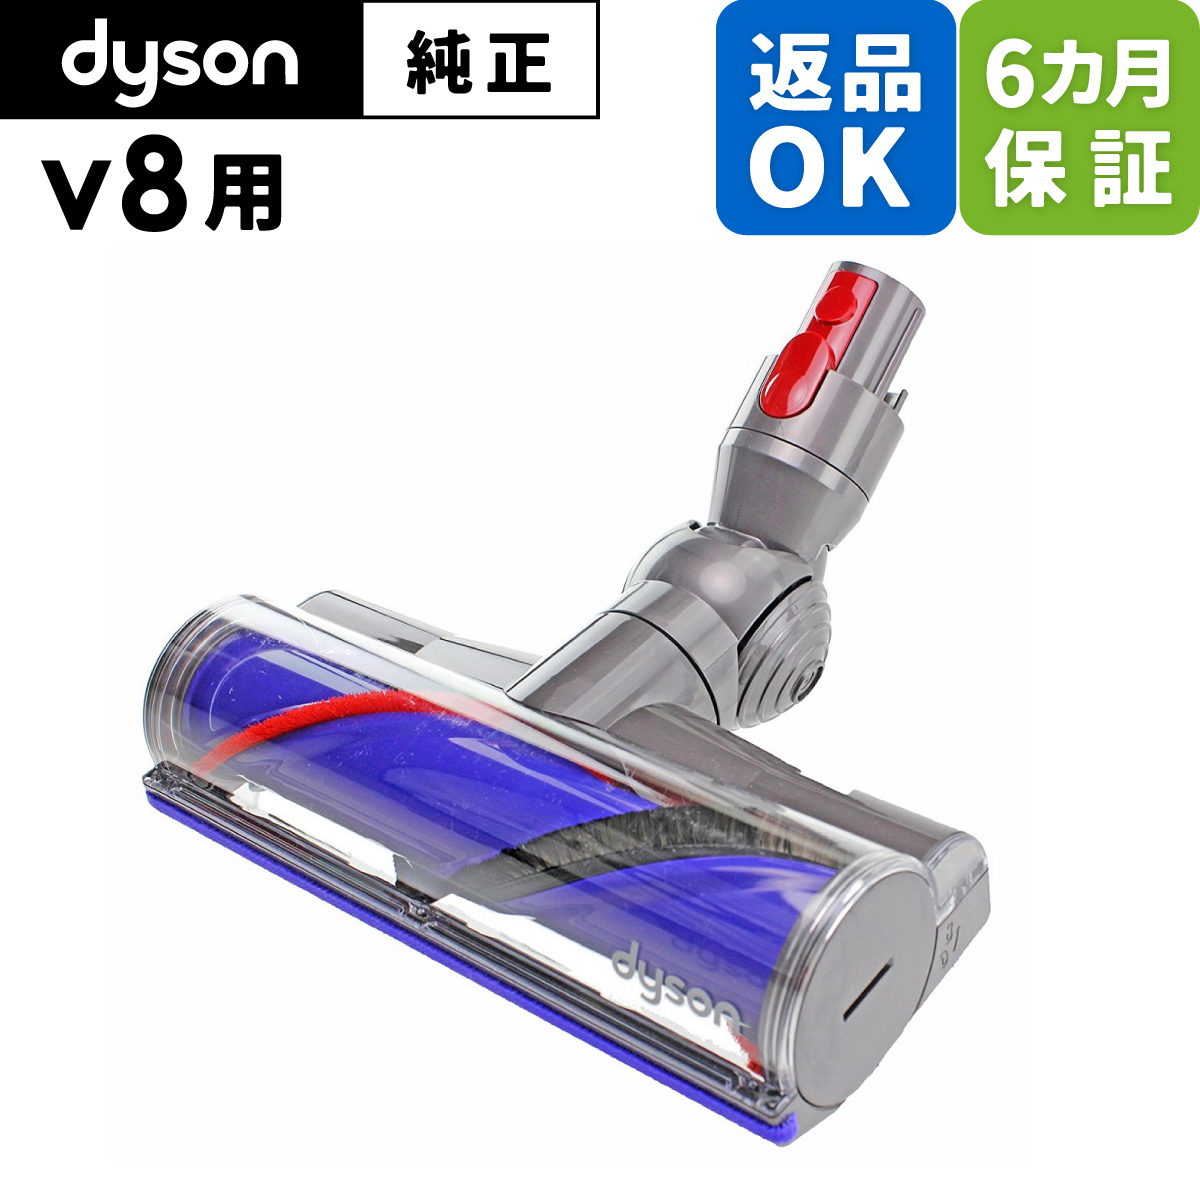 返品OK 6カ月保証 Dyson ダイソン 純正 パーツ ダイレクトドライブクリーナーヘッド 適合 モデル 型式 V8 ※slim対象外 交換